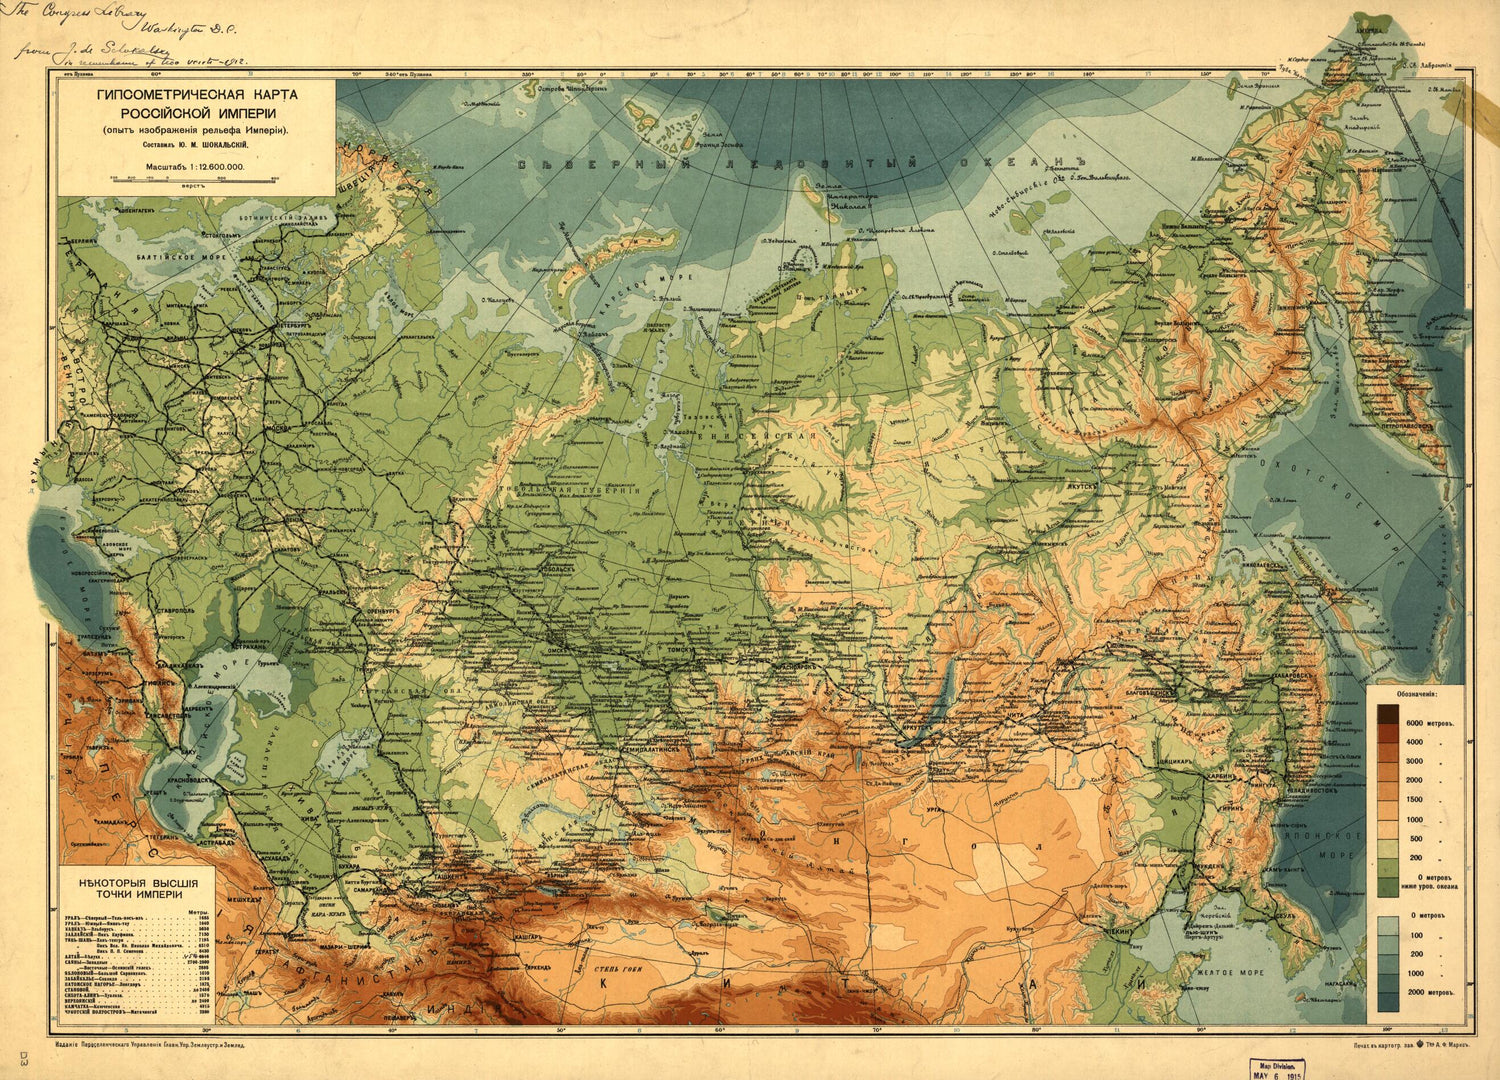 This old map of Gipsometricheskai︠a︡ Karta Rossīĭskoĭ Imperīi : (opyt Izobrazhenīi︠a︡ Relʹefa Imperīi) from 1912 was created by  Russia. Pereselencheskoe Upravlenīe, I︠u︡. M. (I︠u︡liĭ Mikhaĭlovich) Shokalʹskiĭ in 1912